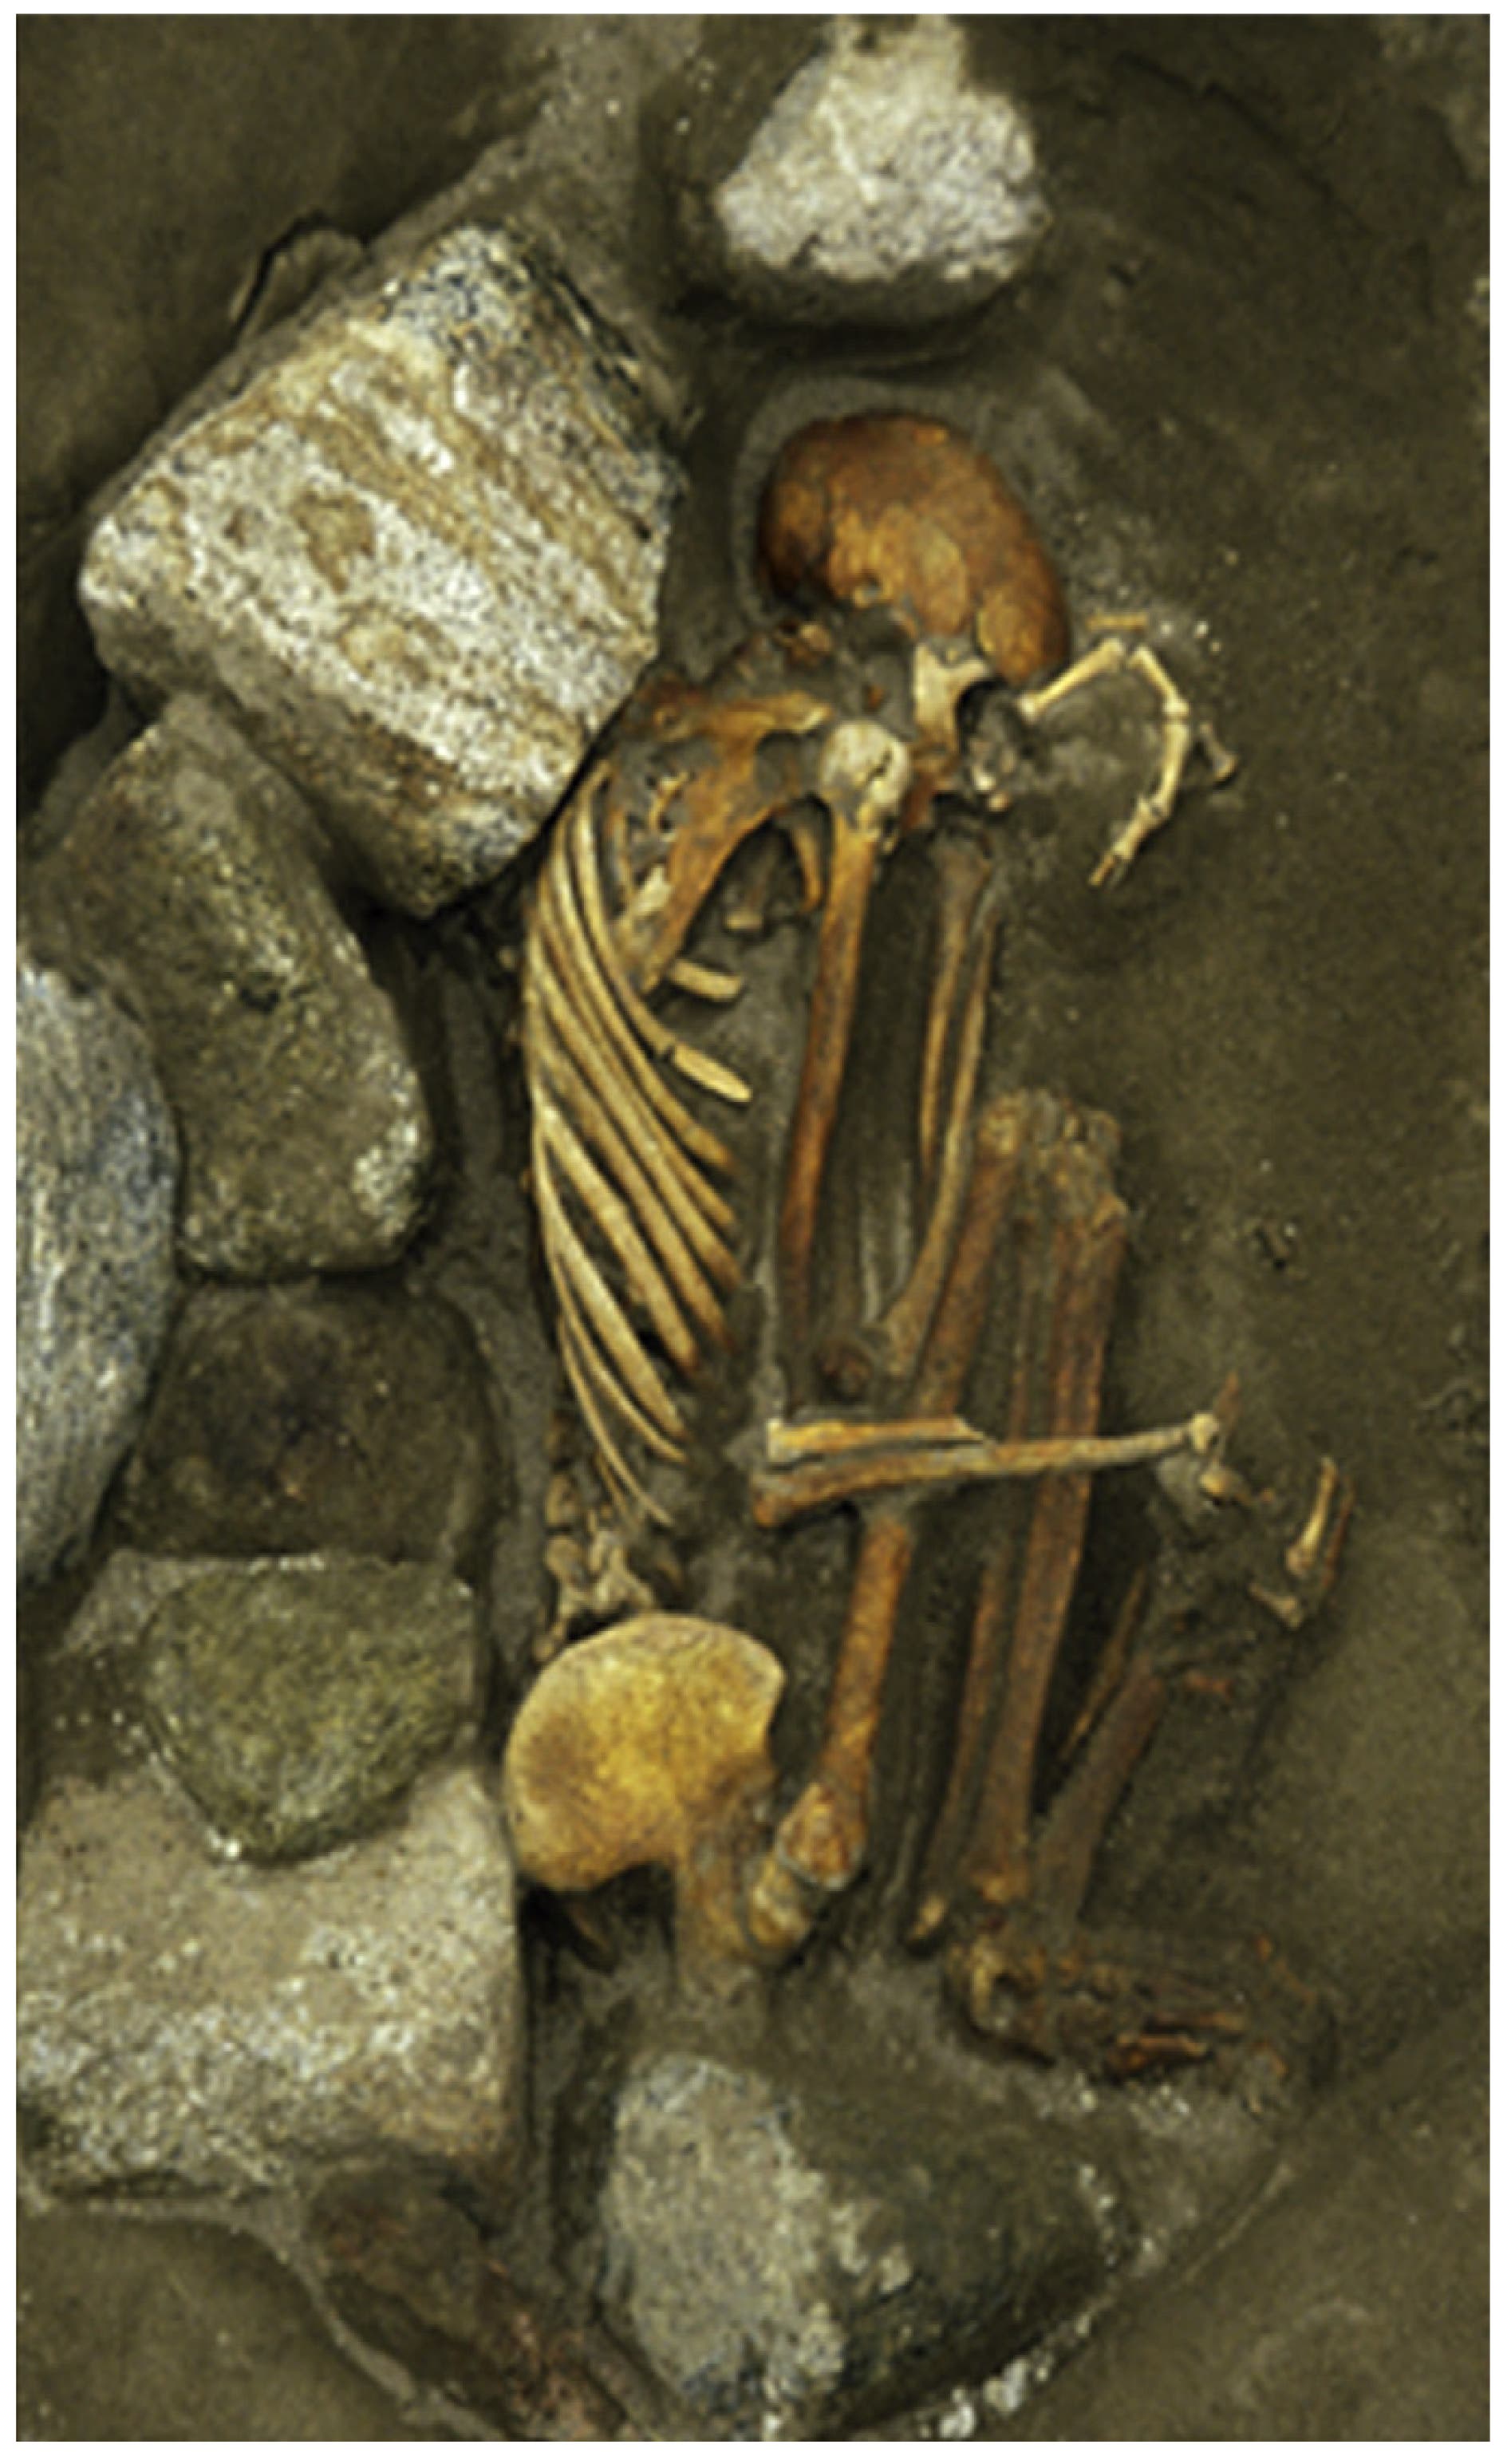 Das weibliche Skelett aus dem bronzezeitlichen Cladh Hallan wurde aus den Überresten von mindestens drei verschiedenen Personen zusammengesetzt.